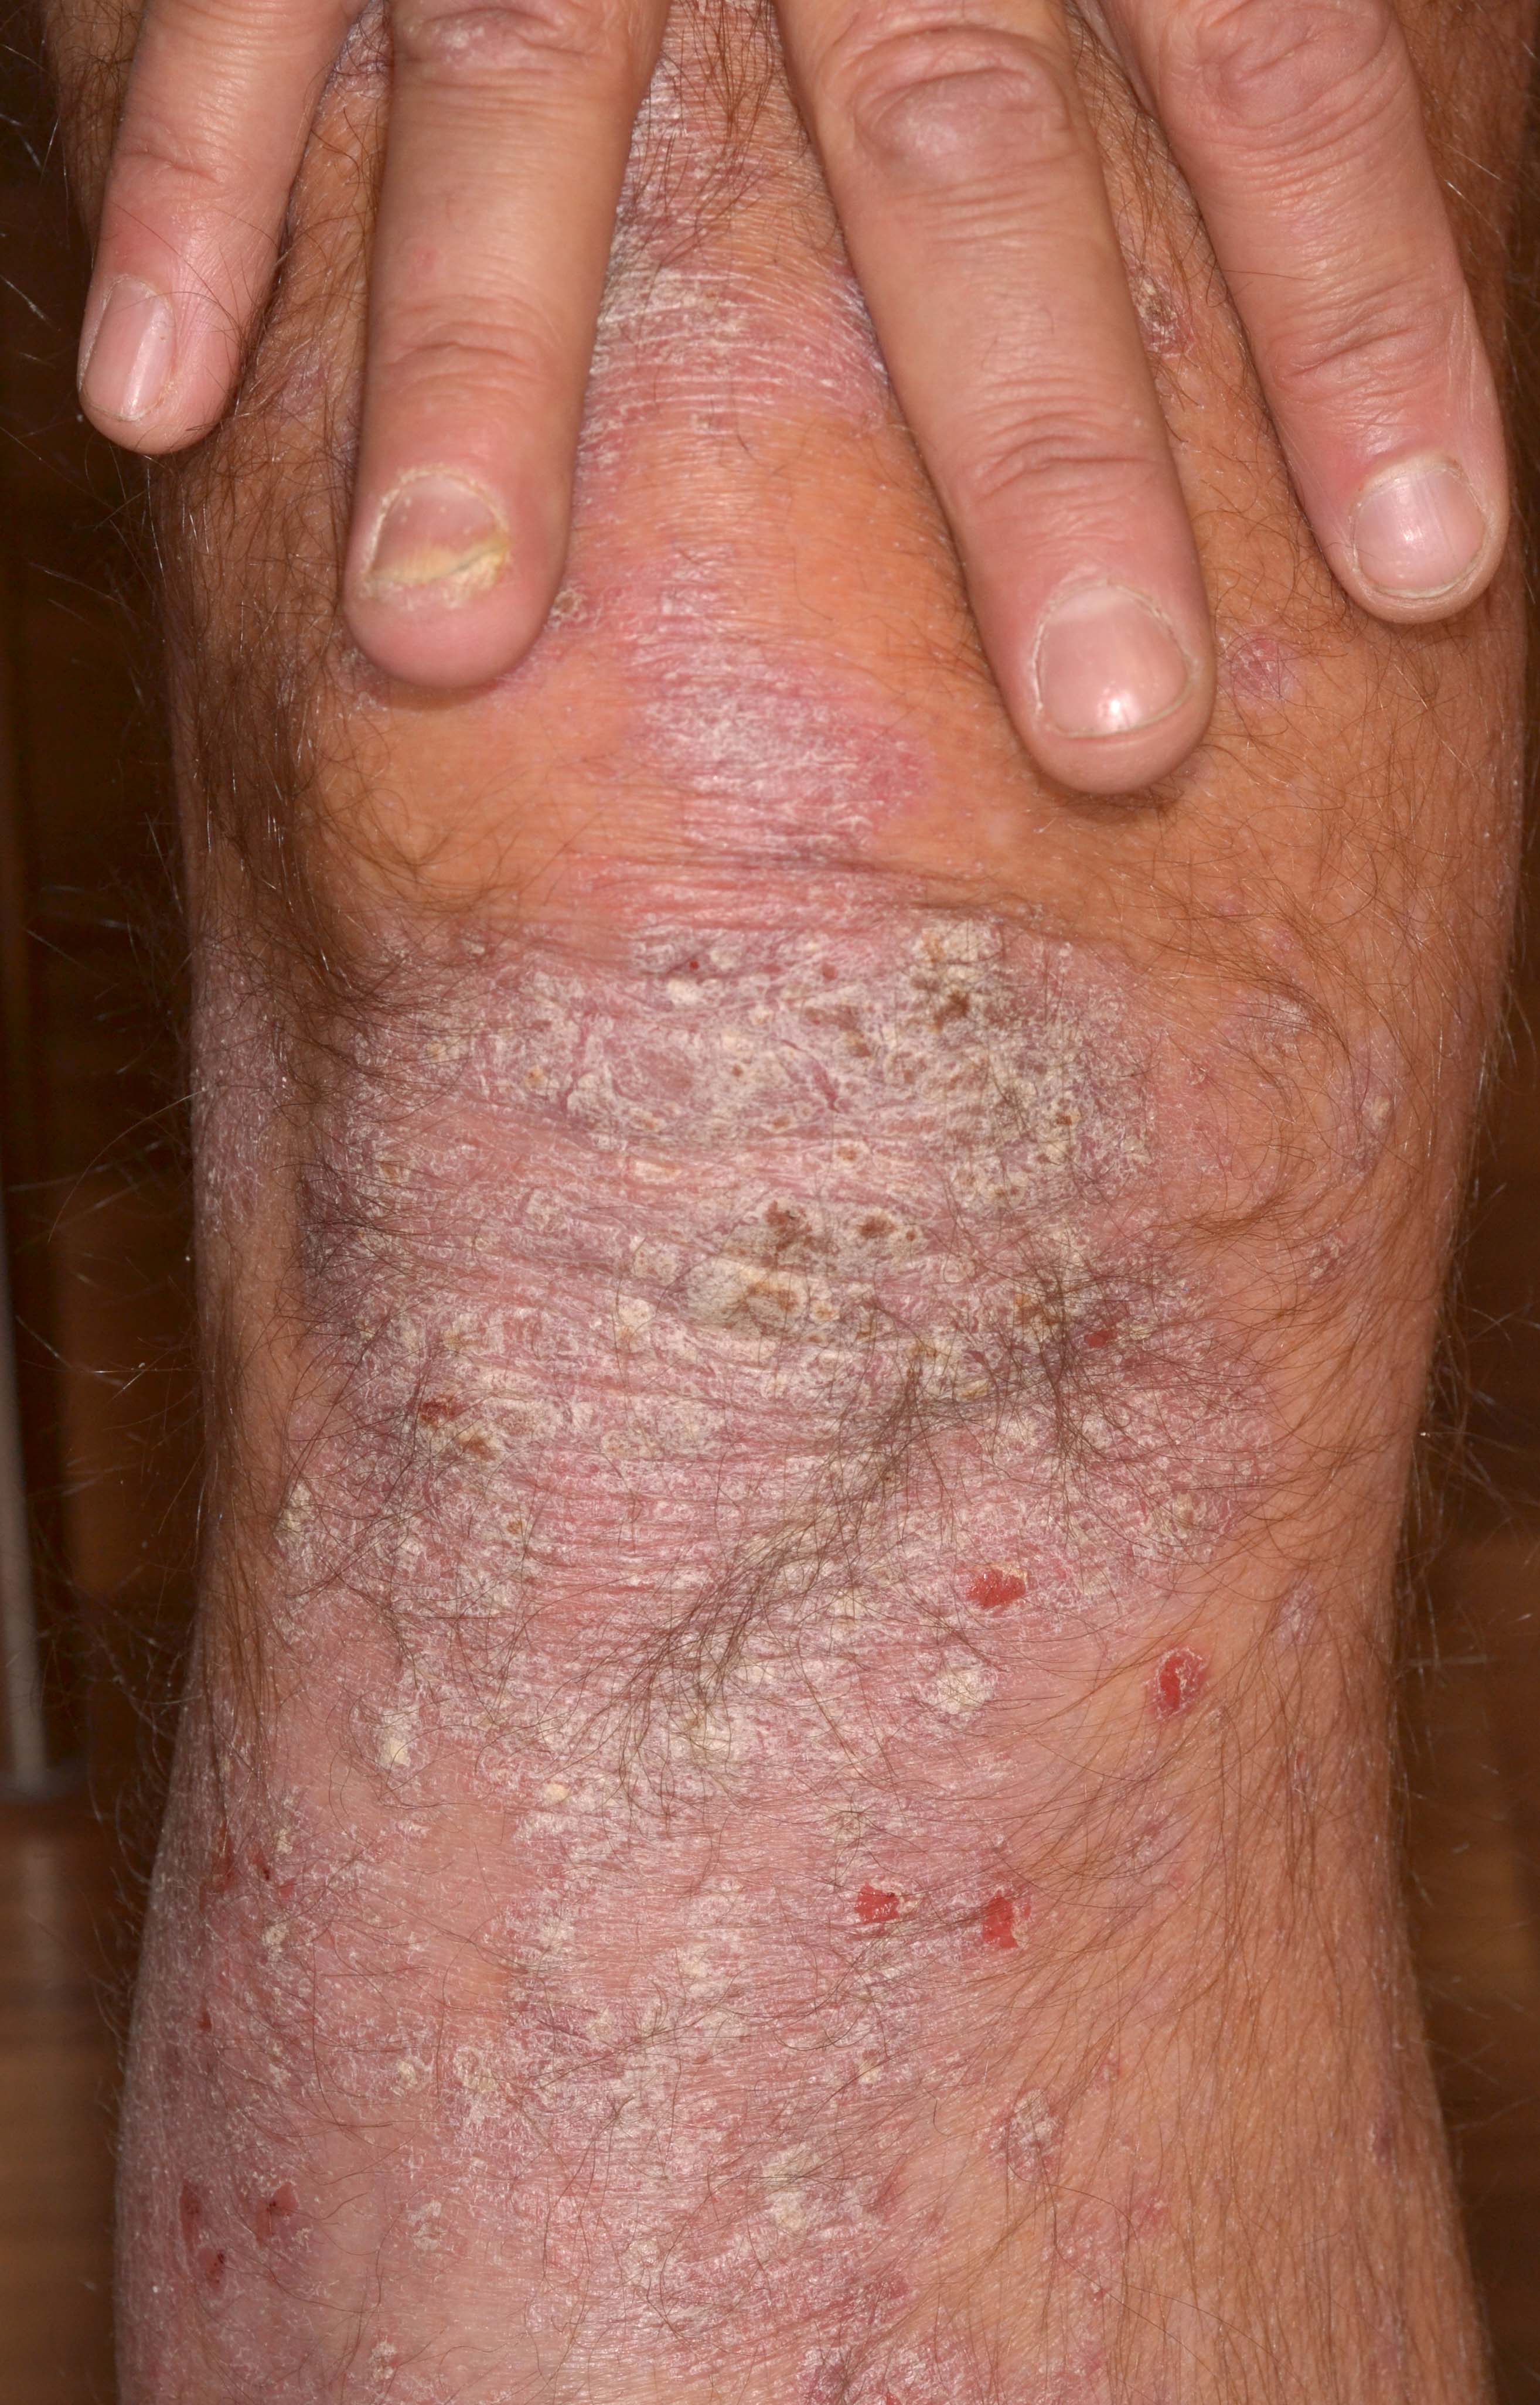 Plackpsoriasis på knä samt nagelpsoriasis